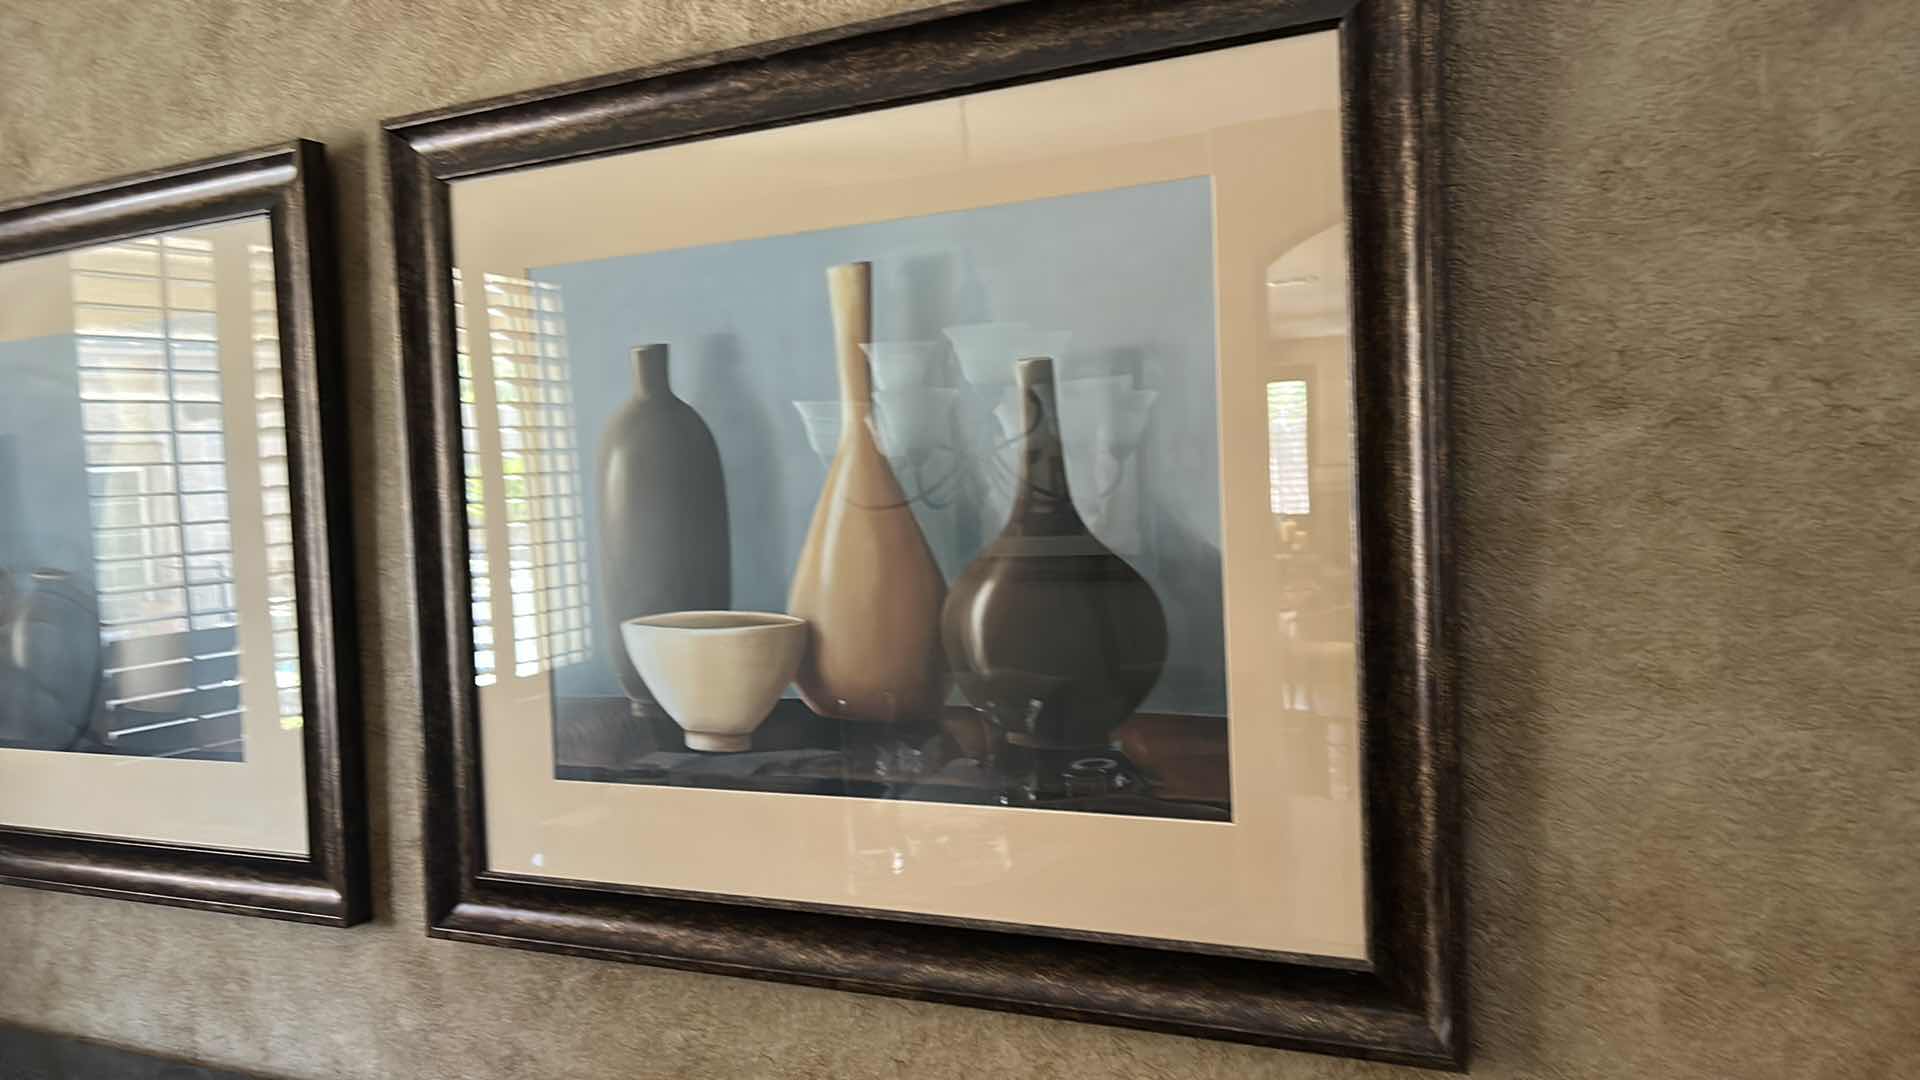 Photo 3 of Home decor still life vases framed artwork 46“ x 38“